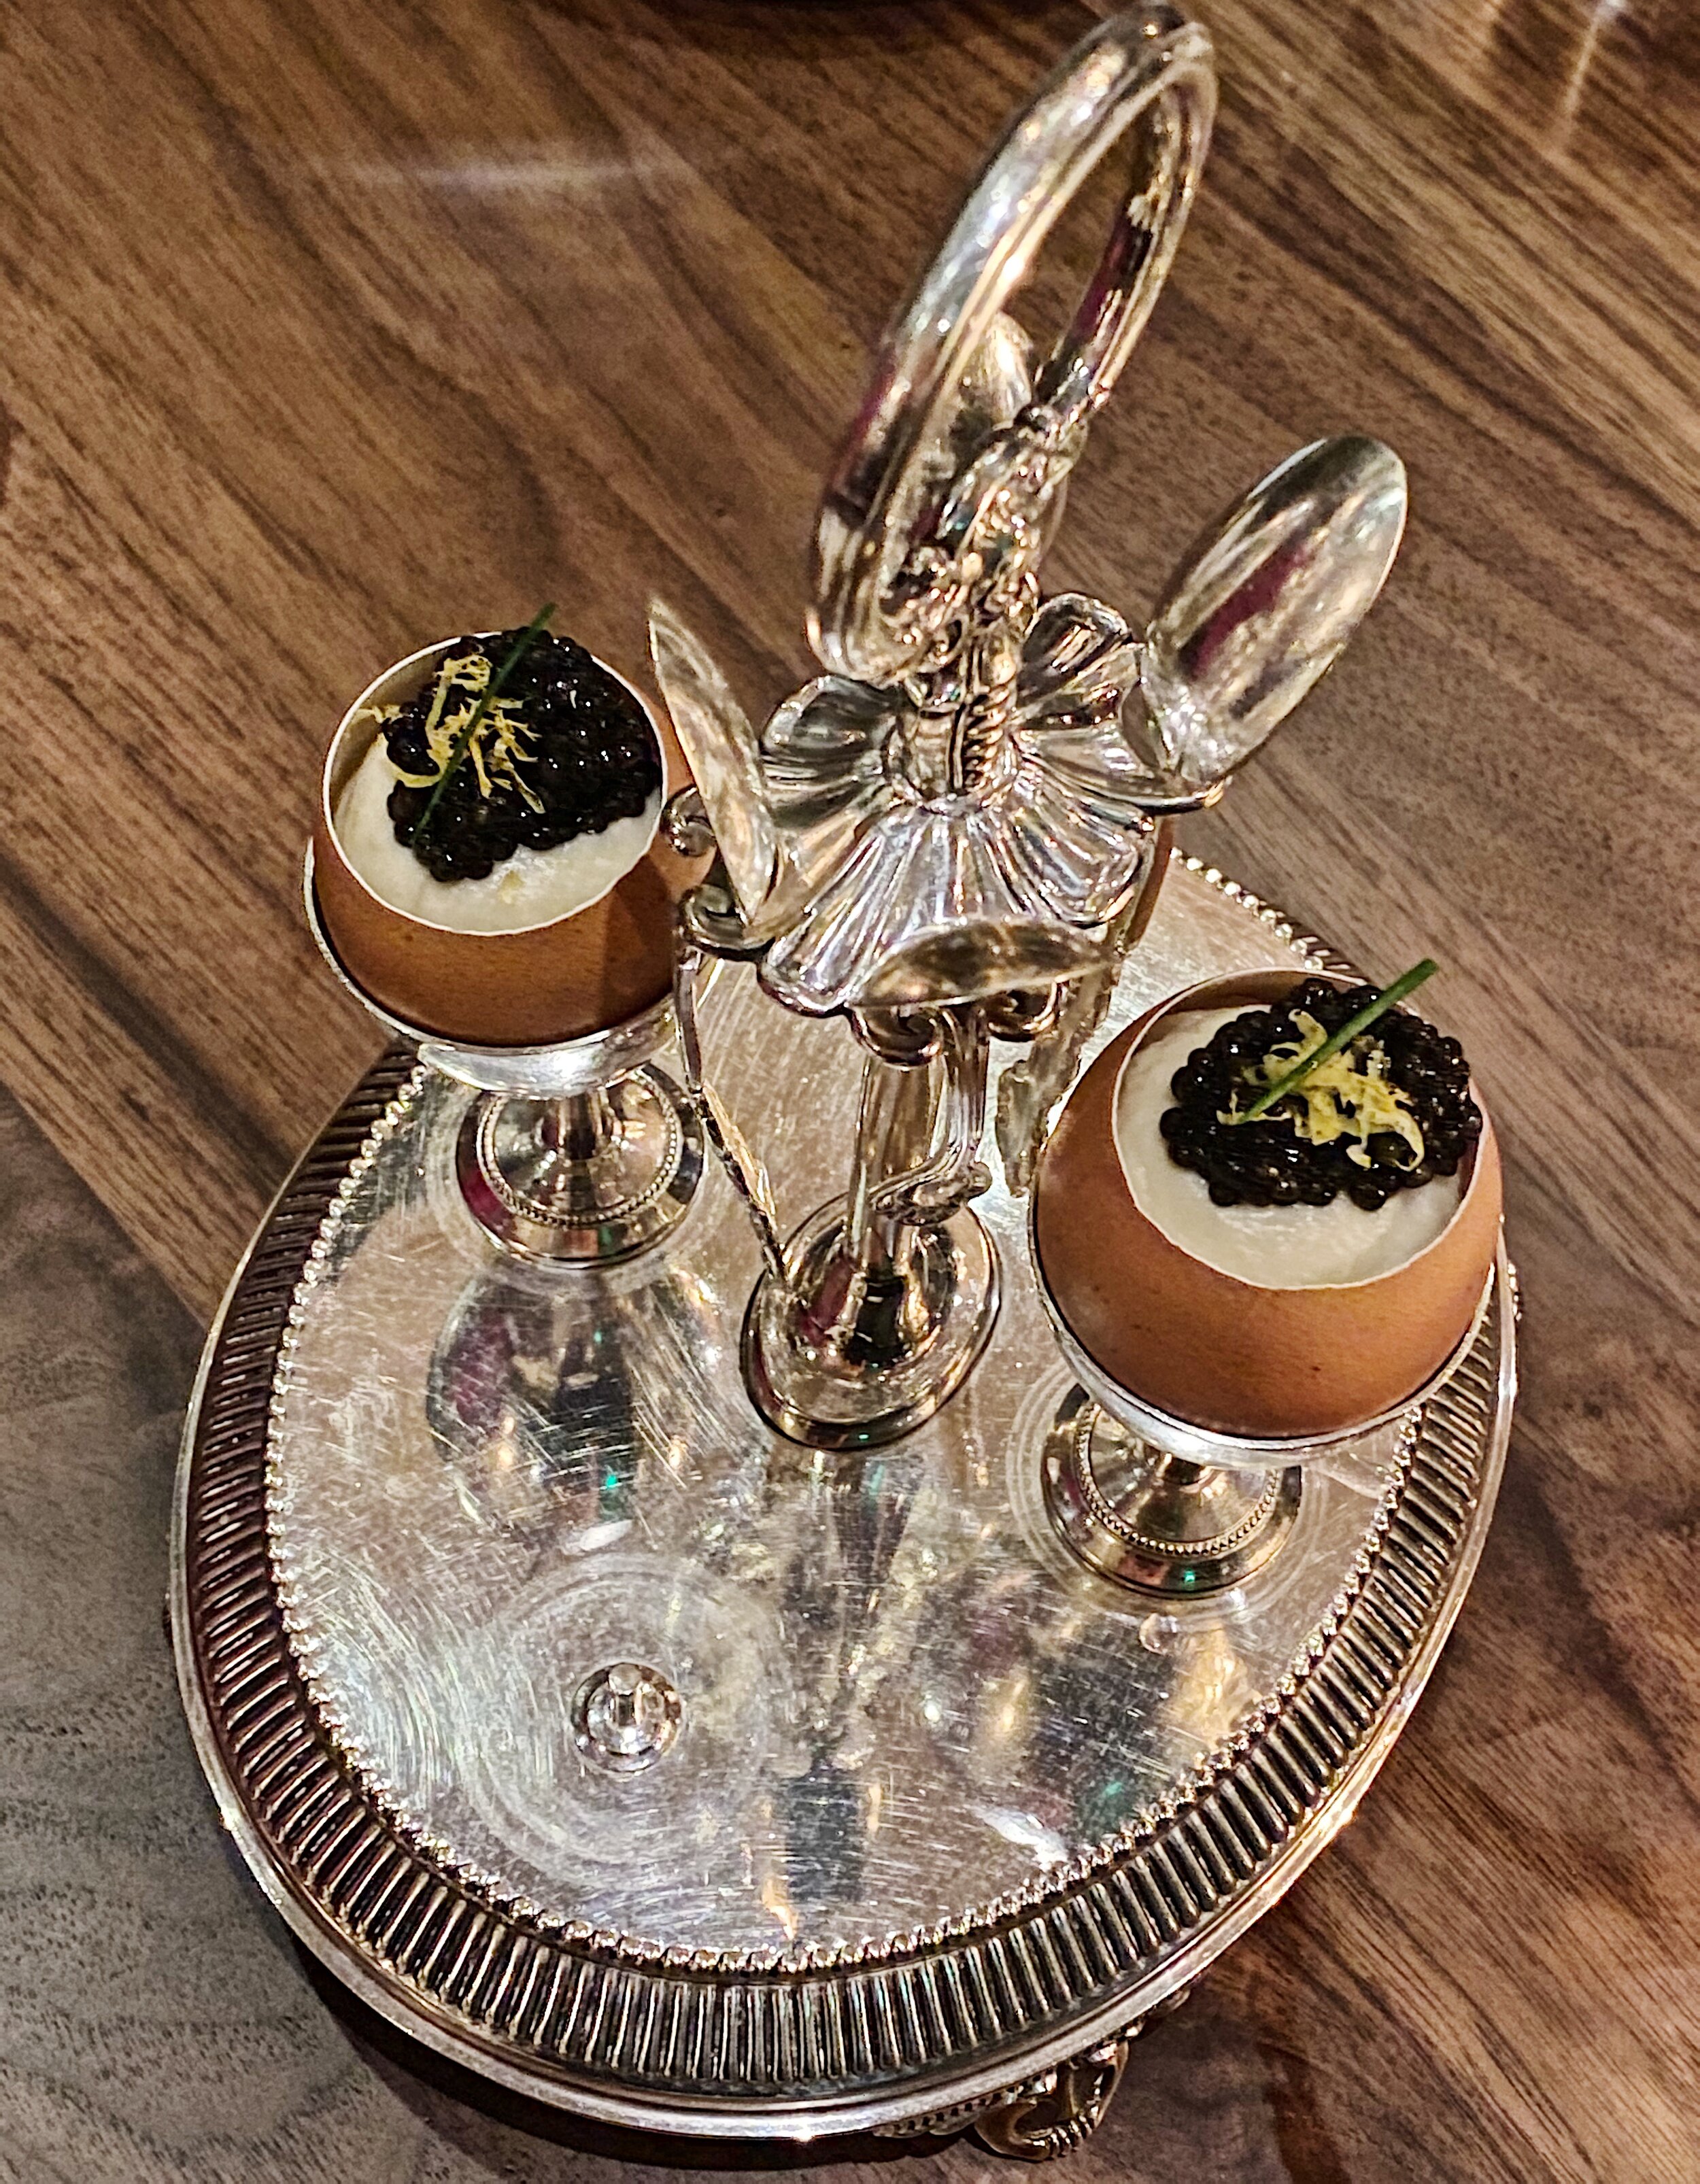 Crème De Choux-Fleur, Bar Crenn, San Francisco, CA